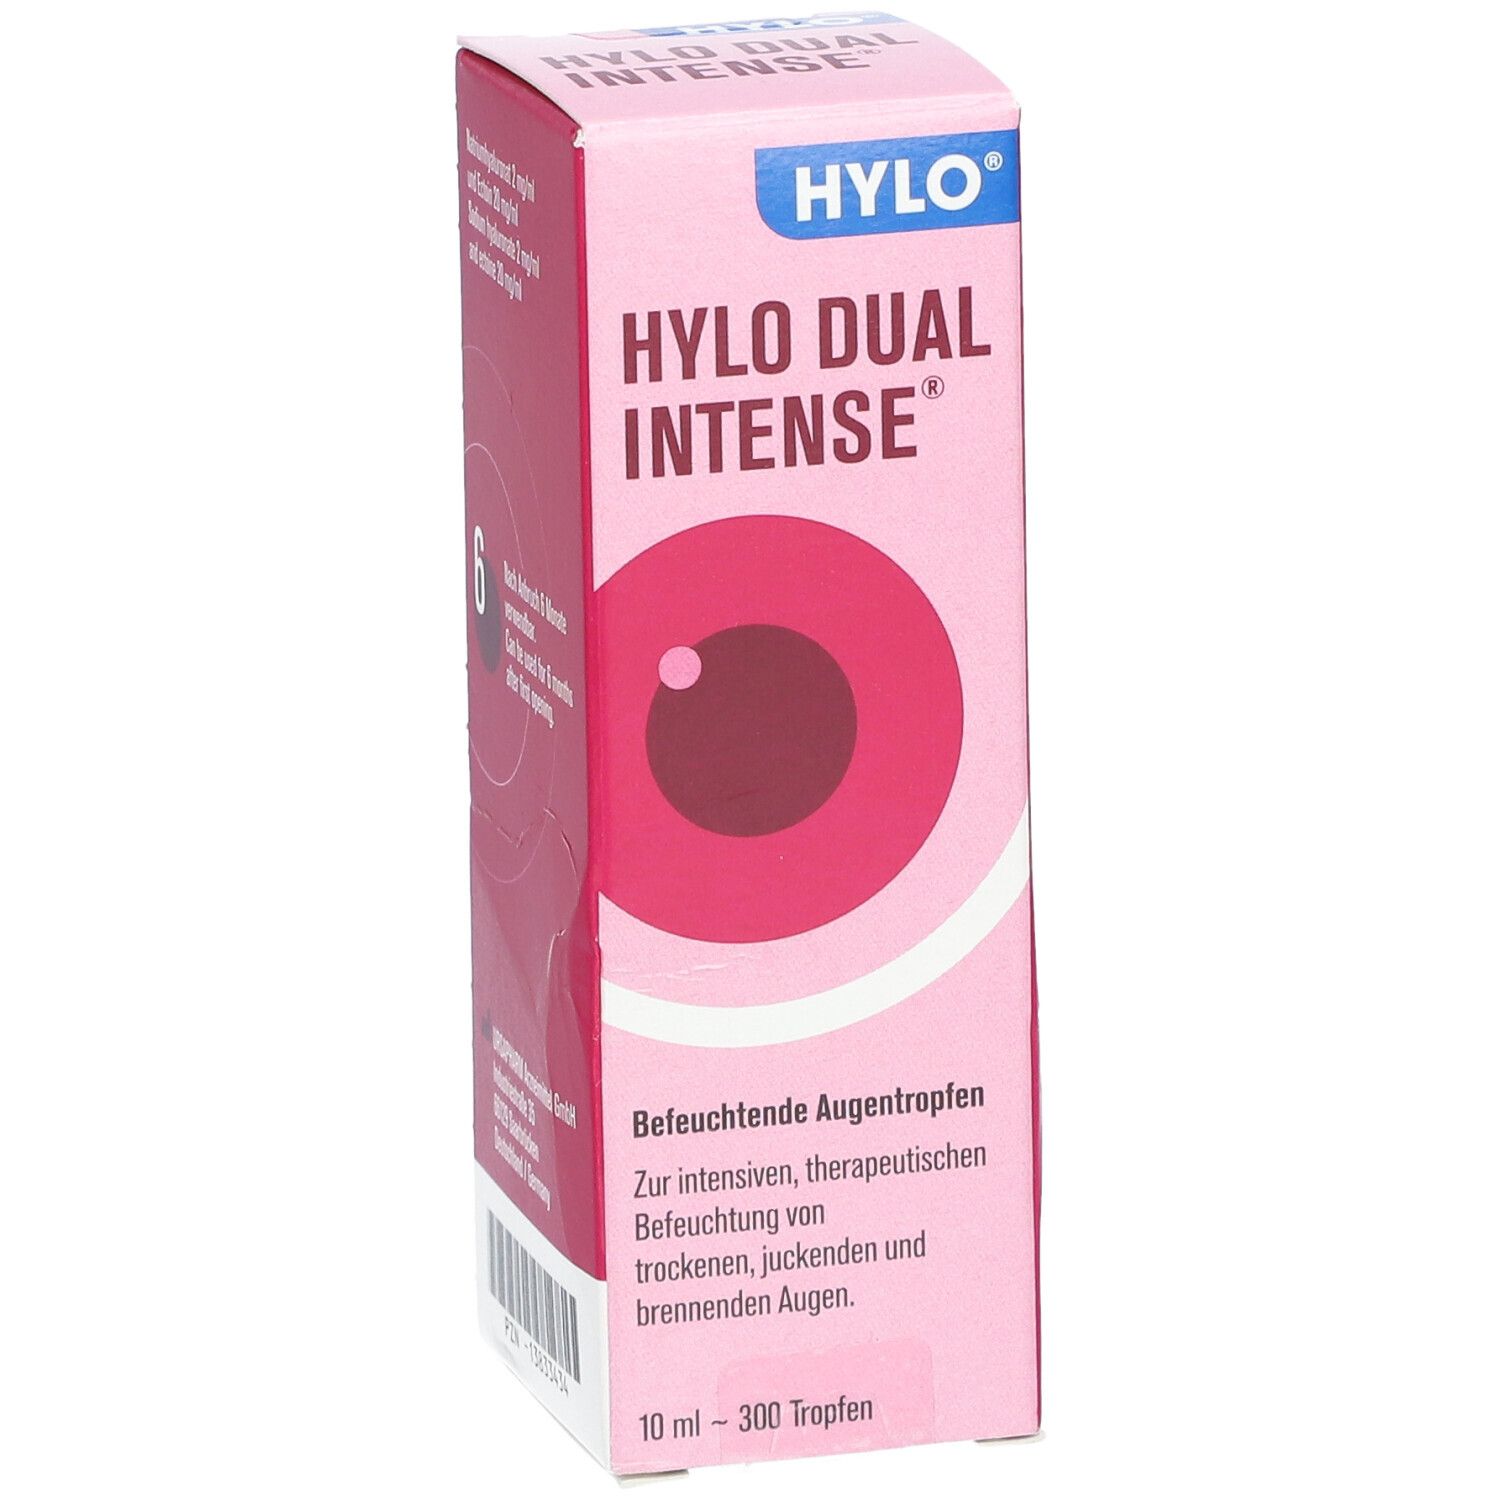 HYLO DUAL INTENSE®